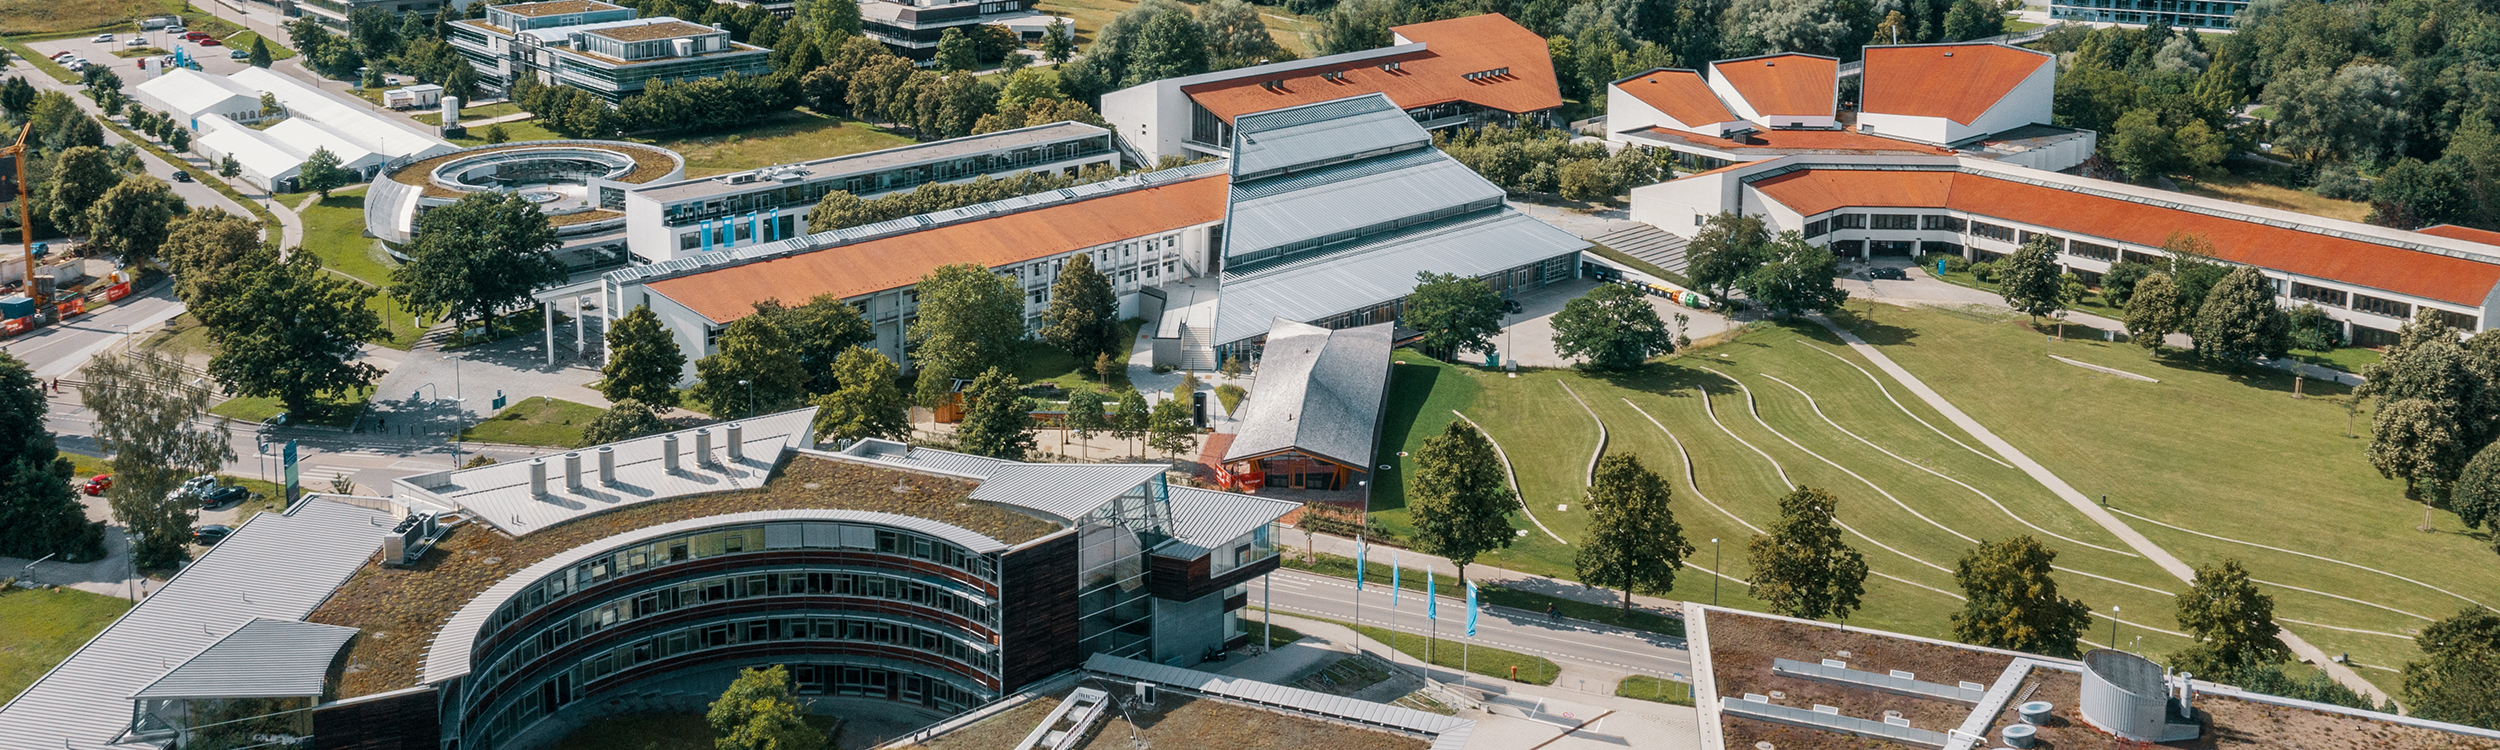 Luftaufnahme mit mehreren Gebäuden auf dem Campus Freising